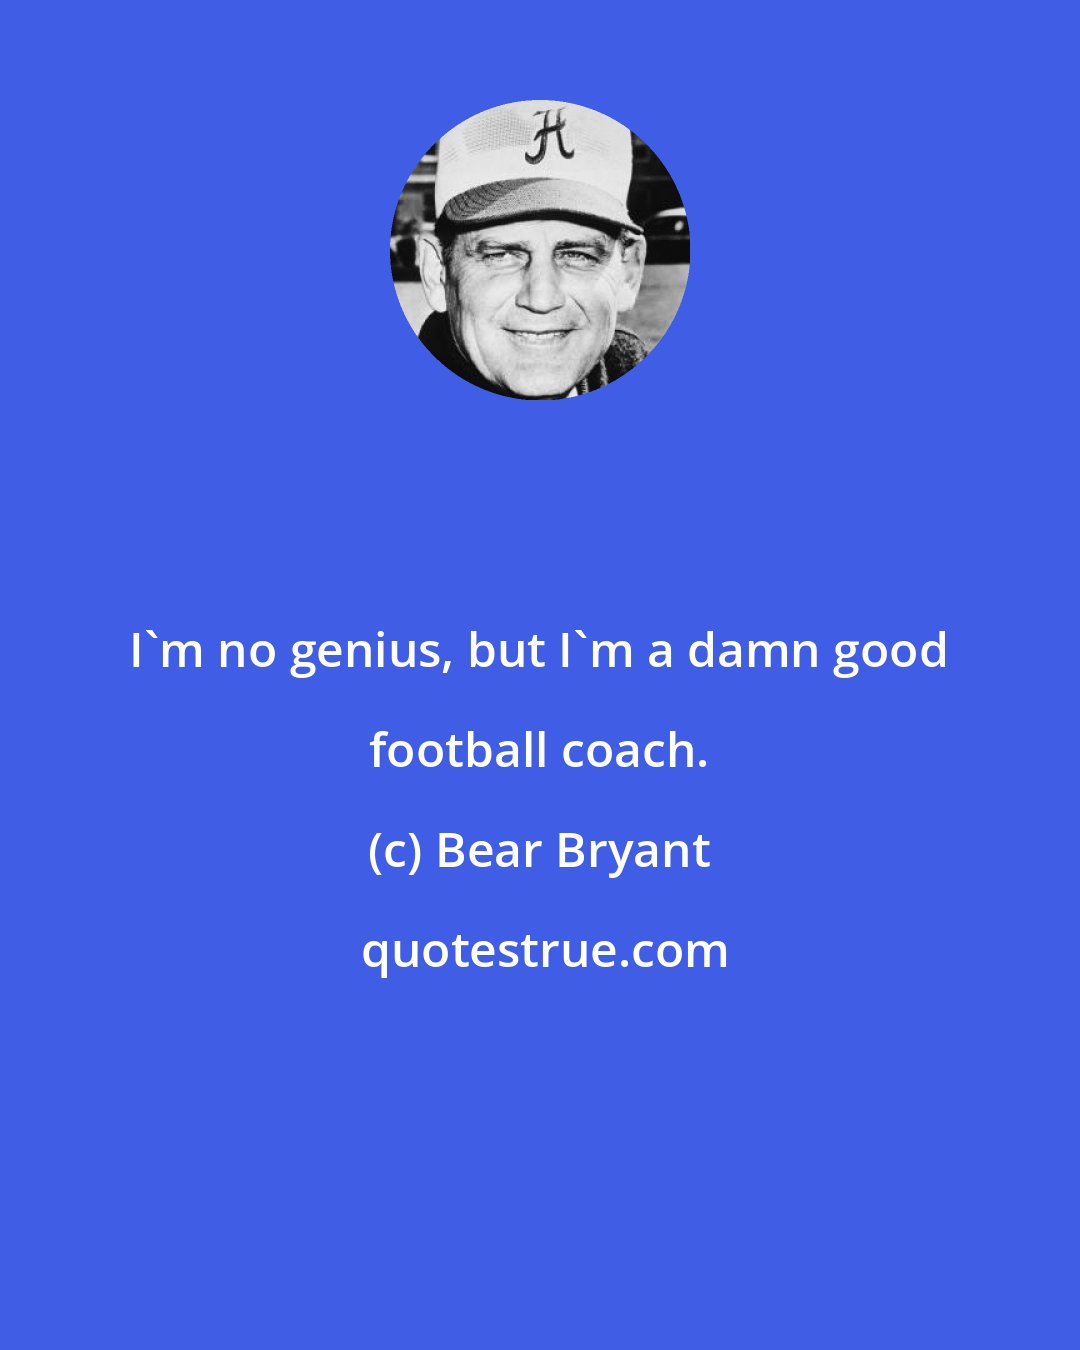 Bear Bryant: I'm no genius, but I'm a damn good football coach.